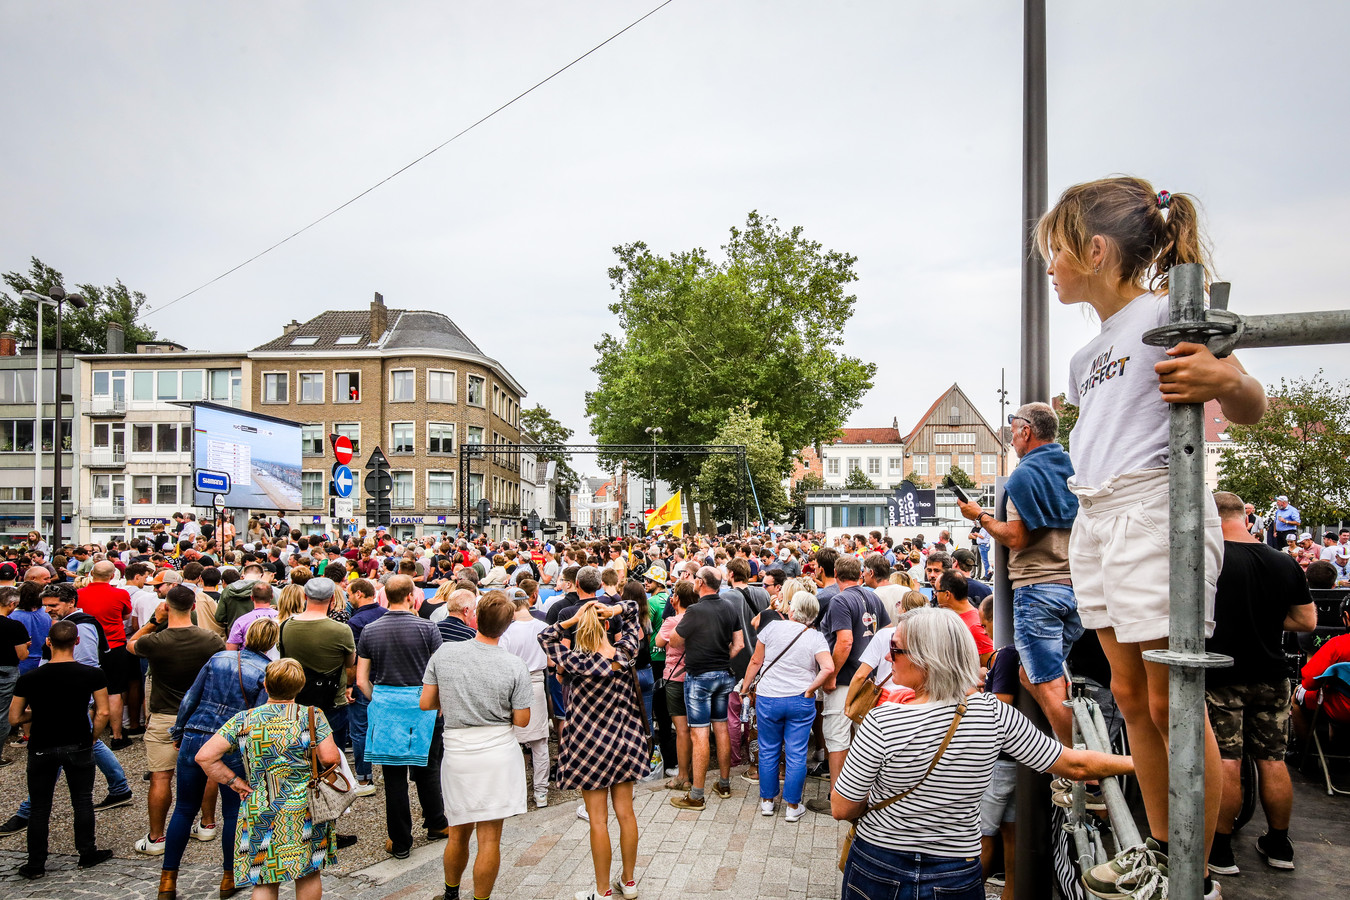 Zeker bij de aankomst van Wout Van Aert kwam het volk massaal naar 't Zand.